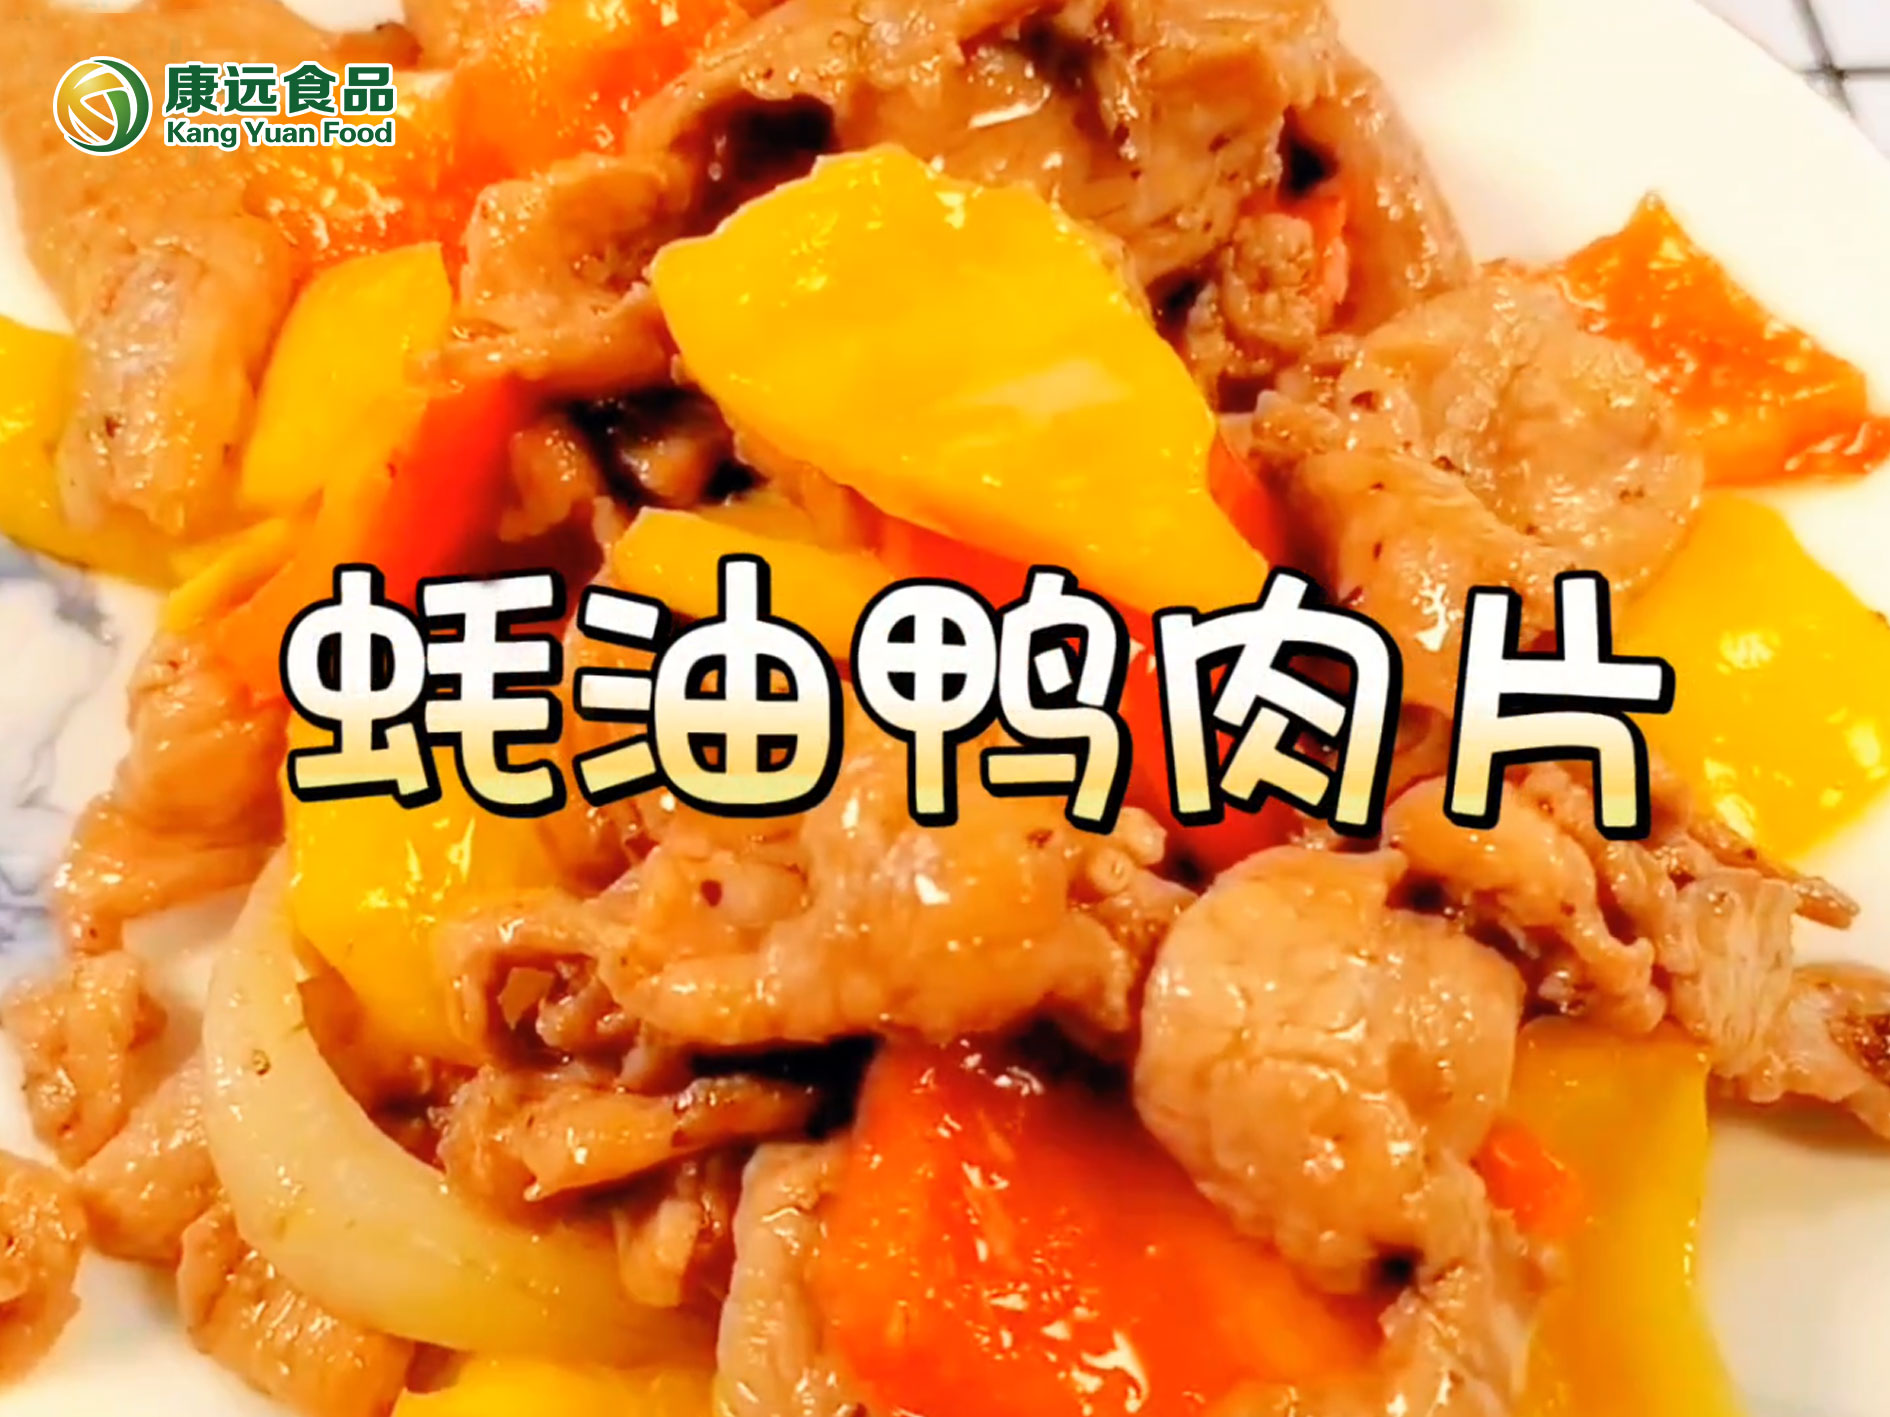 蚝油鸭肉片烹饪视频